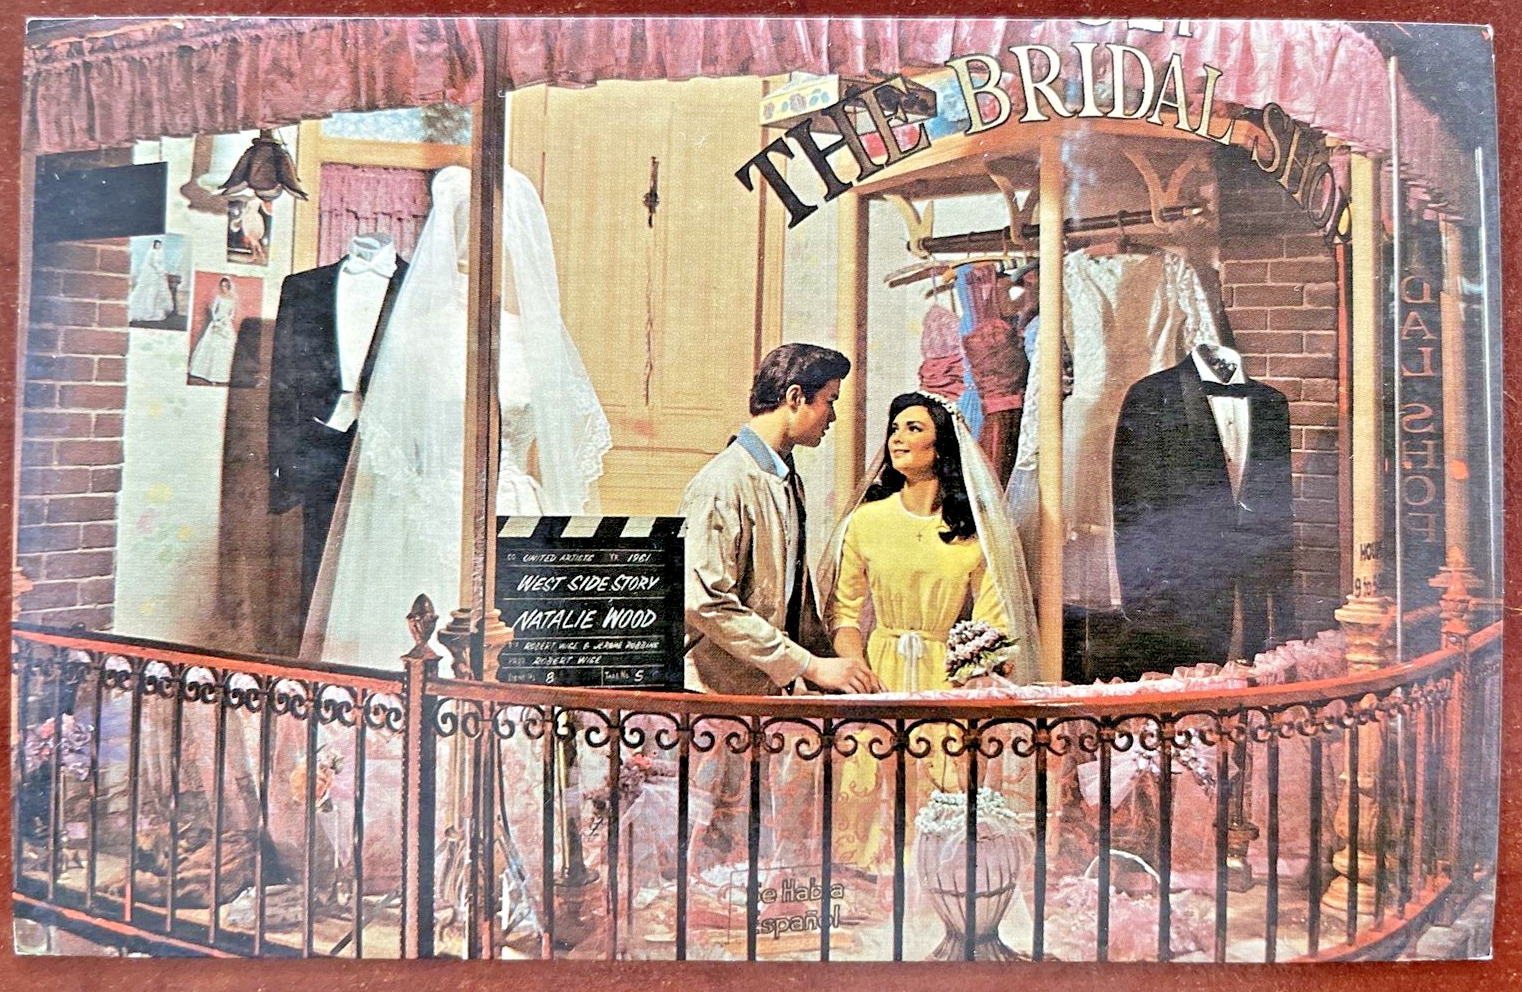 Historical Wax Museum Buena Park Natalie Wood West Side Story Postcard UNP